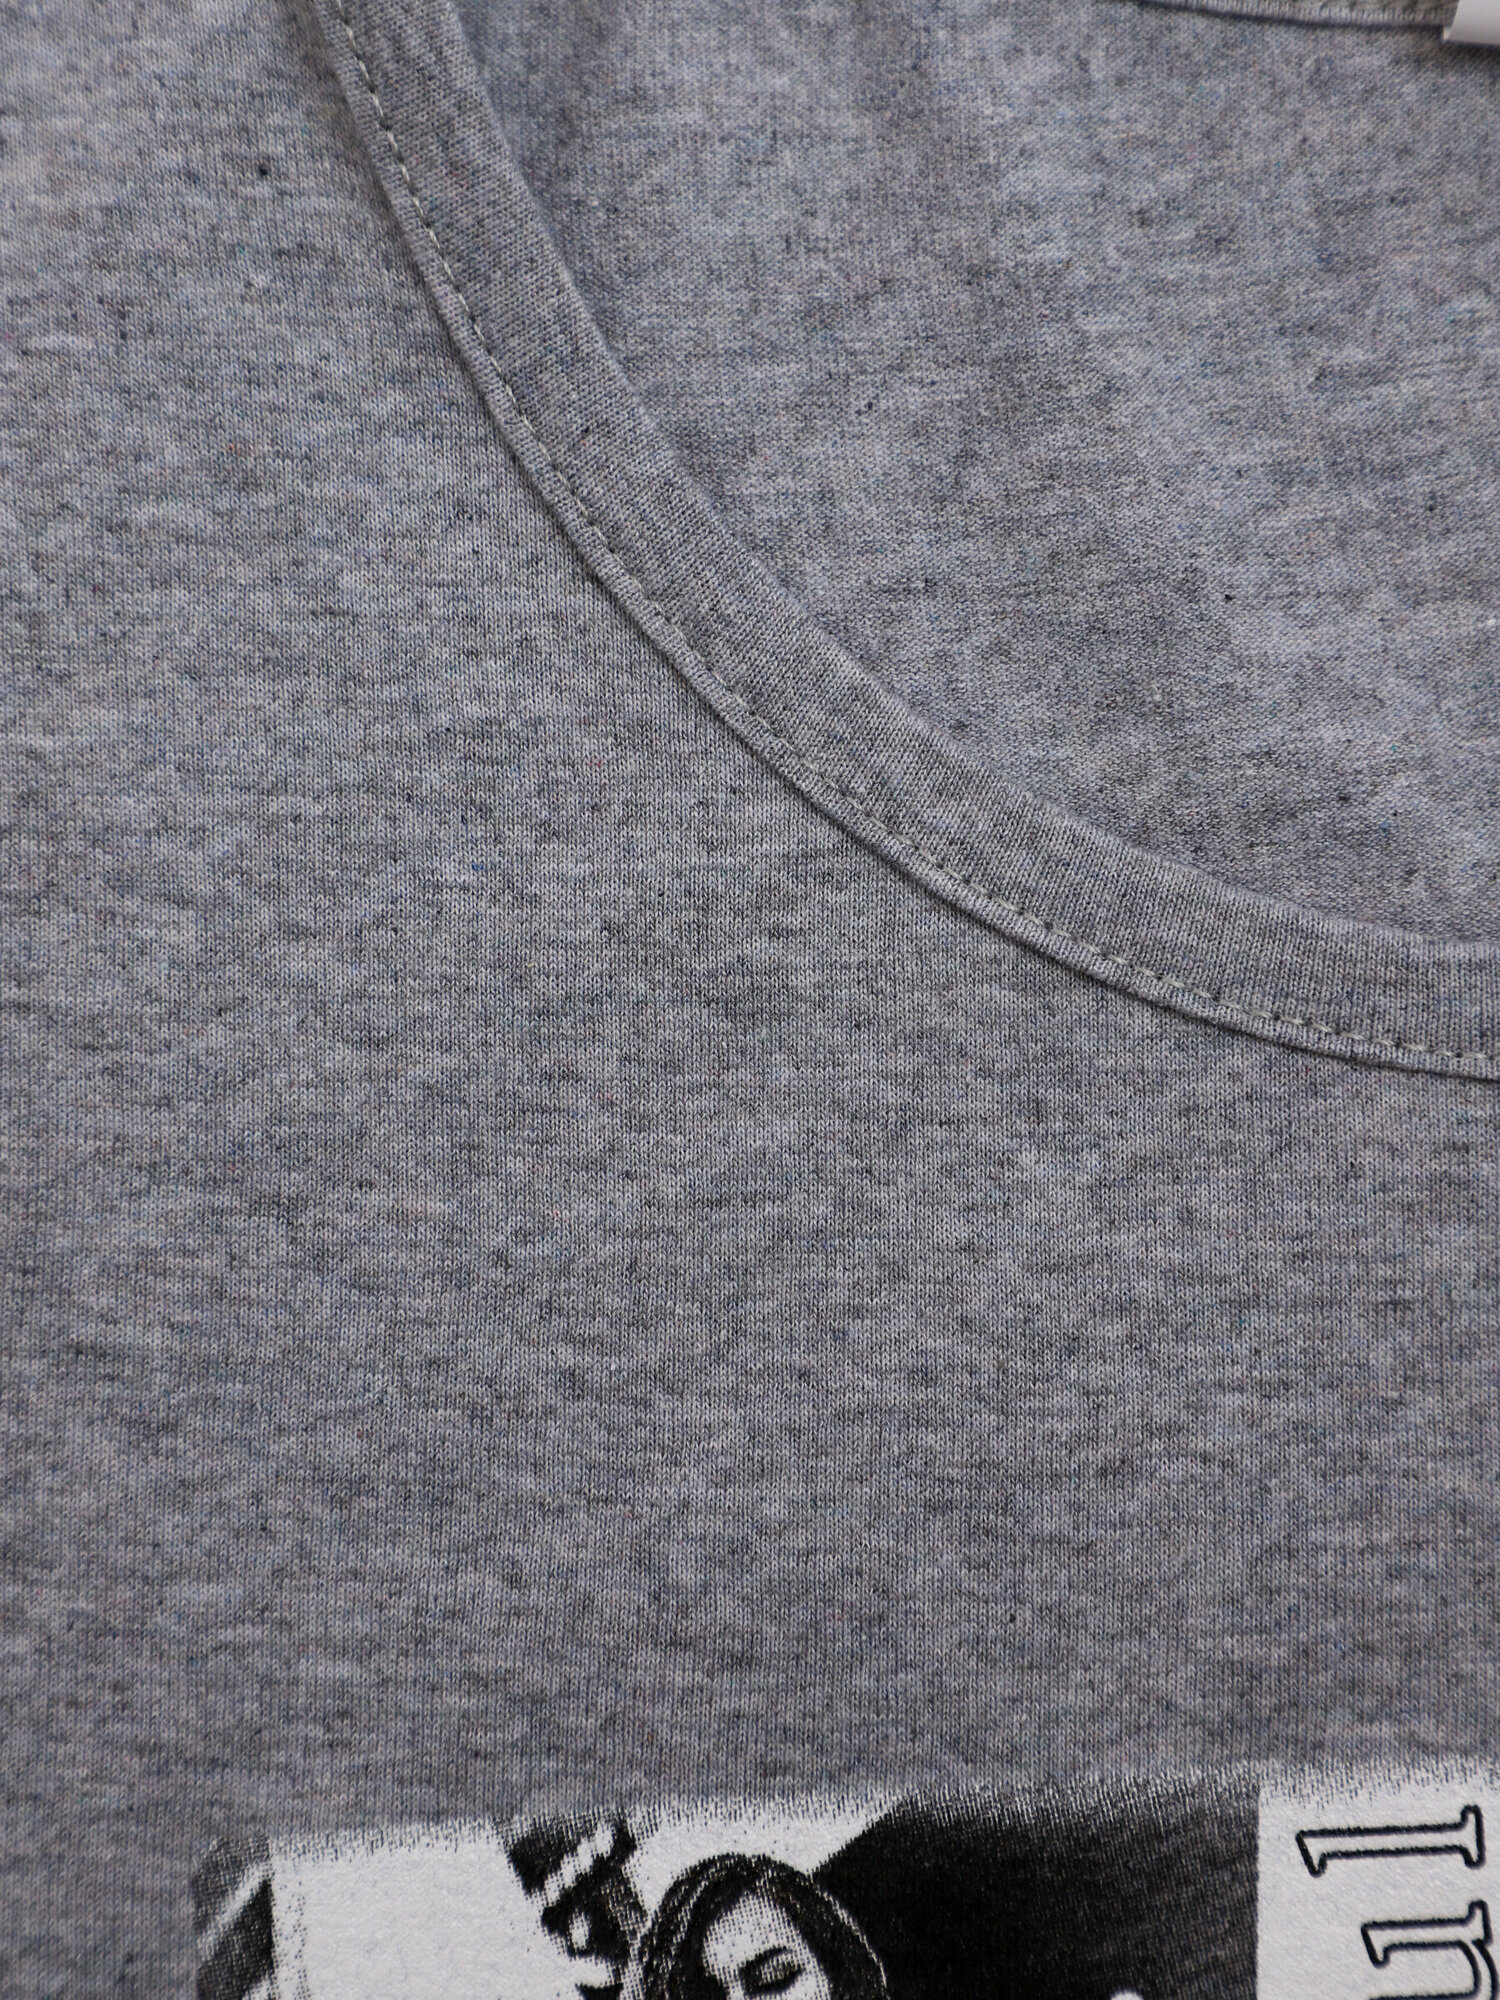 Женская ночная сорочка больших размеров Манифик серый IvCapriz 48 - фотография № 8